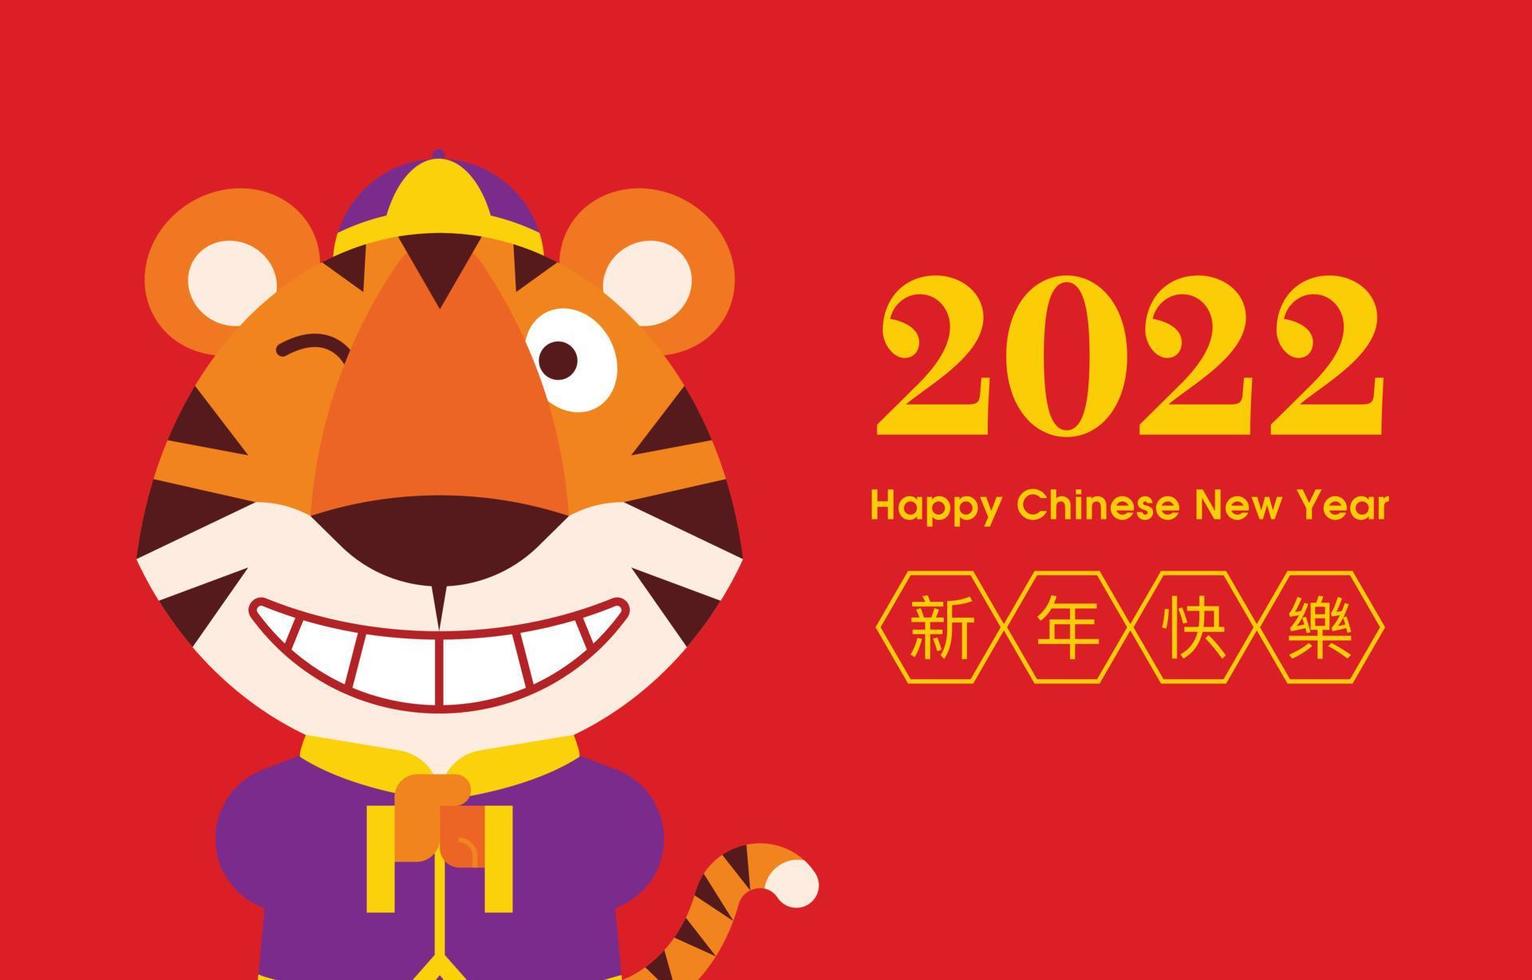 desenho plano desenho animado tigre vestindo traje tradicional chinês punho e palma saudação feliz ano novo chinês 202 vetor